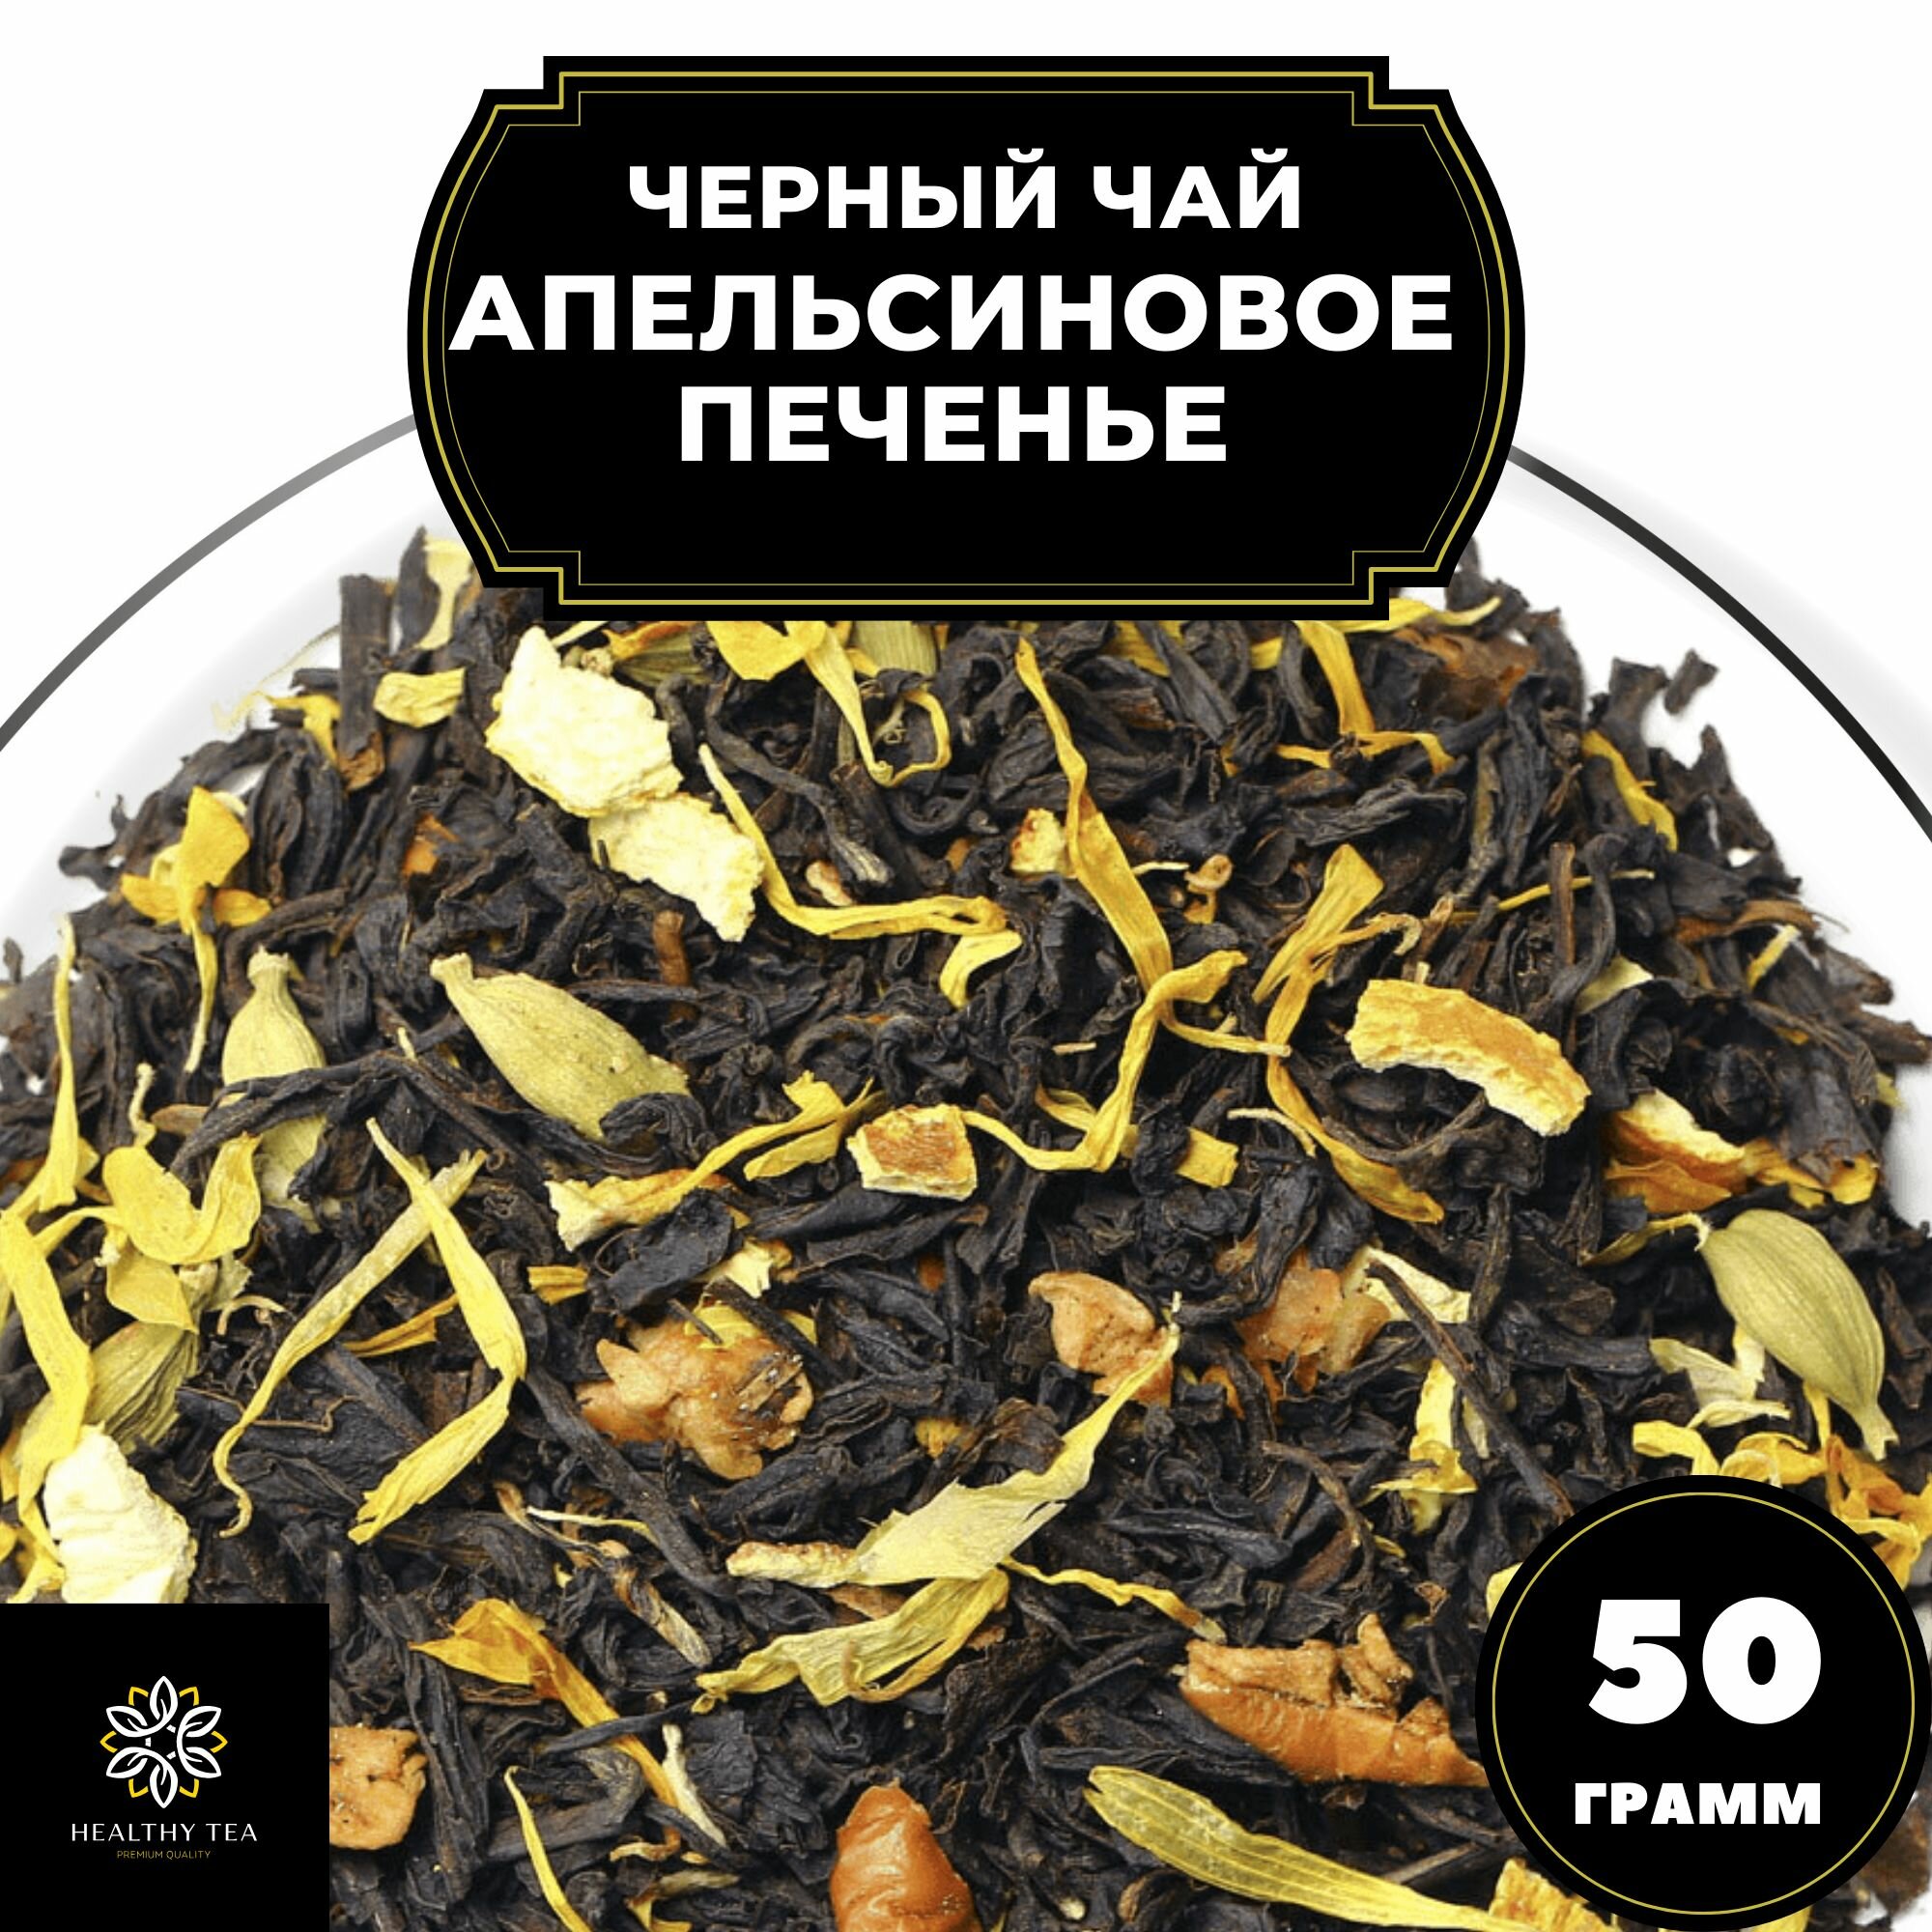 Индийский Черный чай с кардамоном, яблоком и корицей "Апельсиновое печенье" Полезный чай / HEALTHY TEA, 50 гр